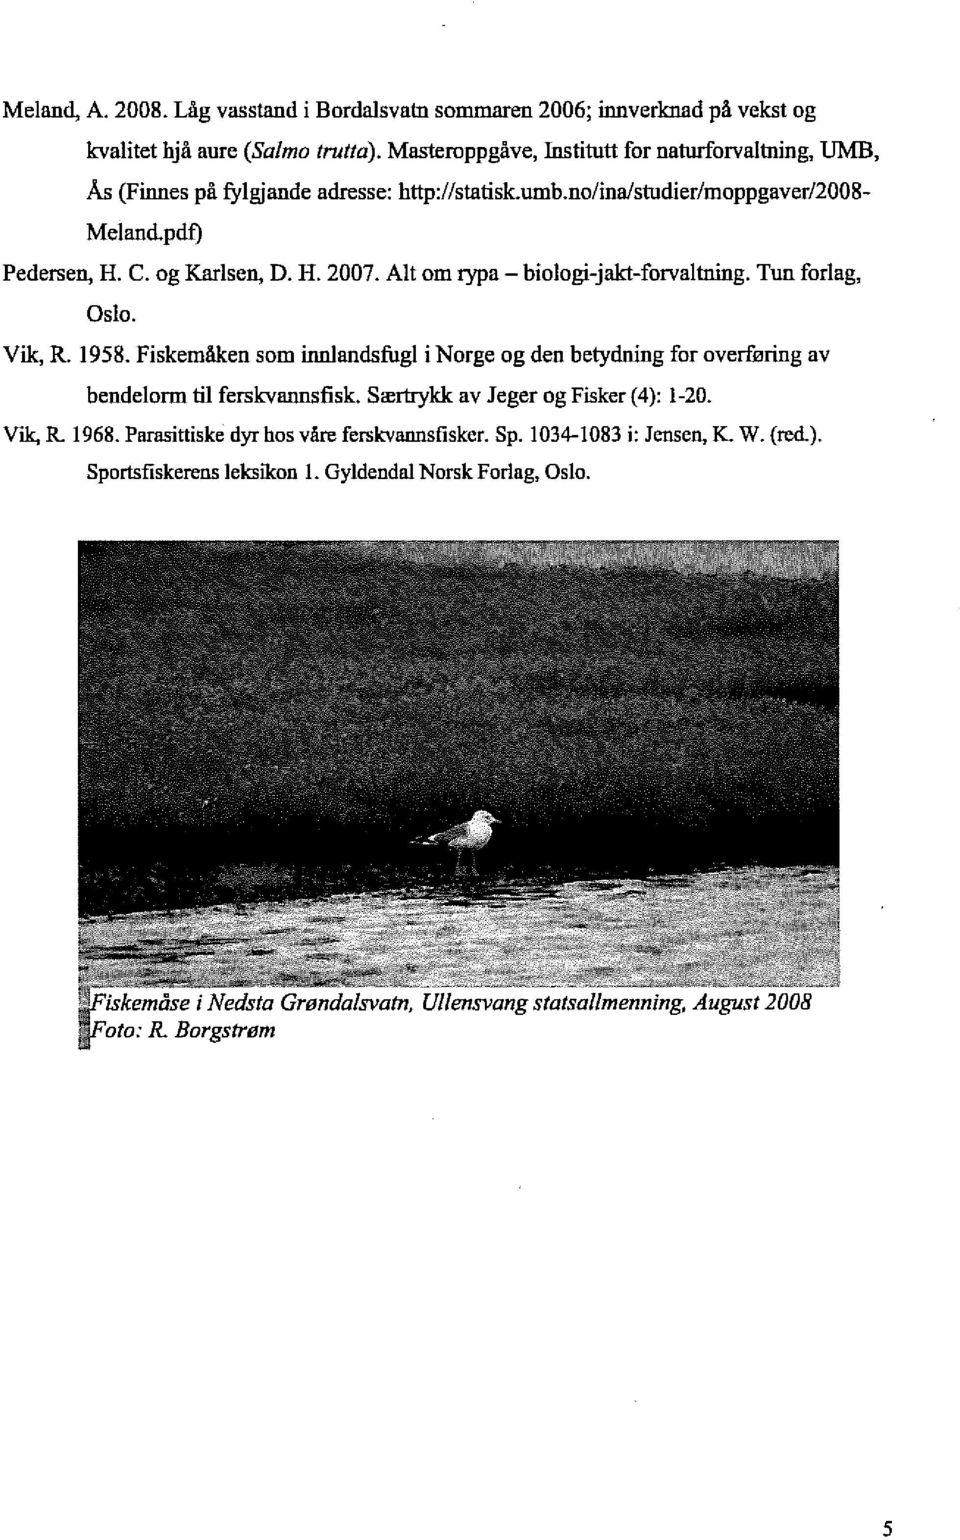 Alt om rypa - biologi-jakt-forvaltning. Tun forlag, Oslo. Vik, R. 1958. Fiskemåken som innlandsfugl i Norge og den betydning for overføring av bendelorm til ferskvannsfisk.